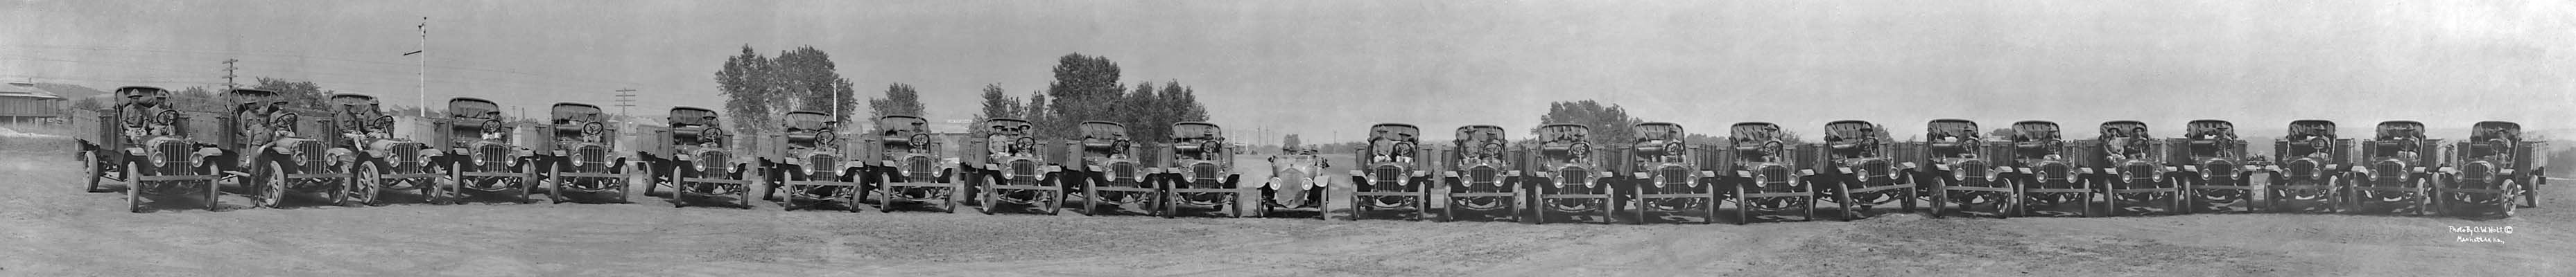 world war i trucks